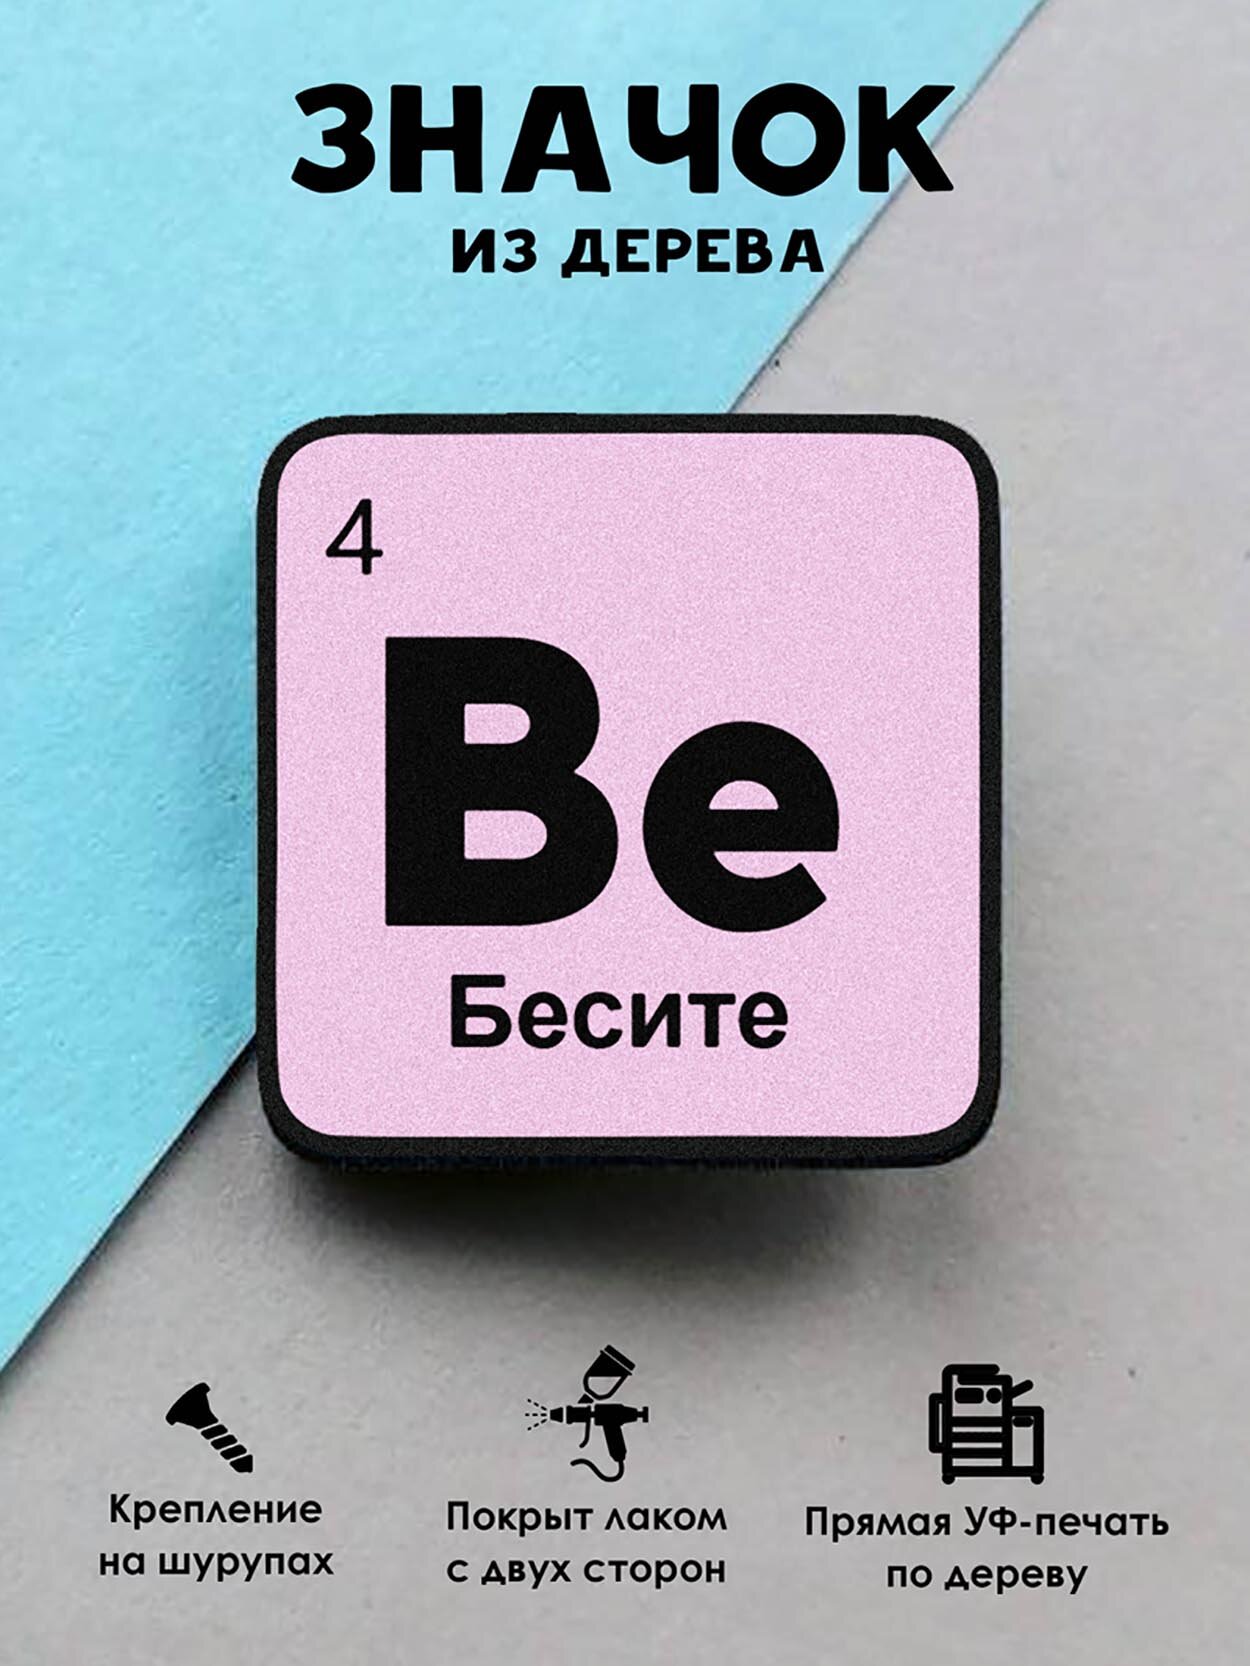 Значок деревянный "Химический элемент Бесите"